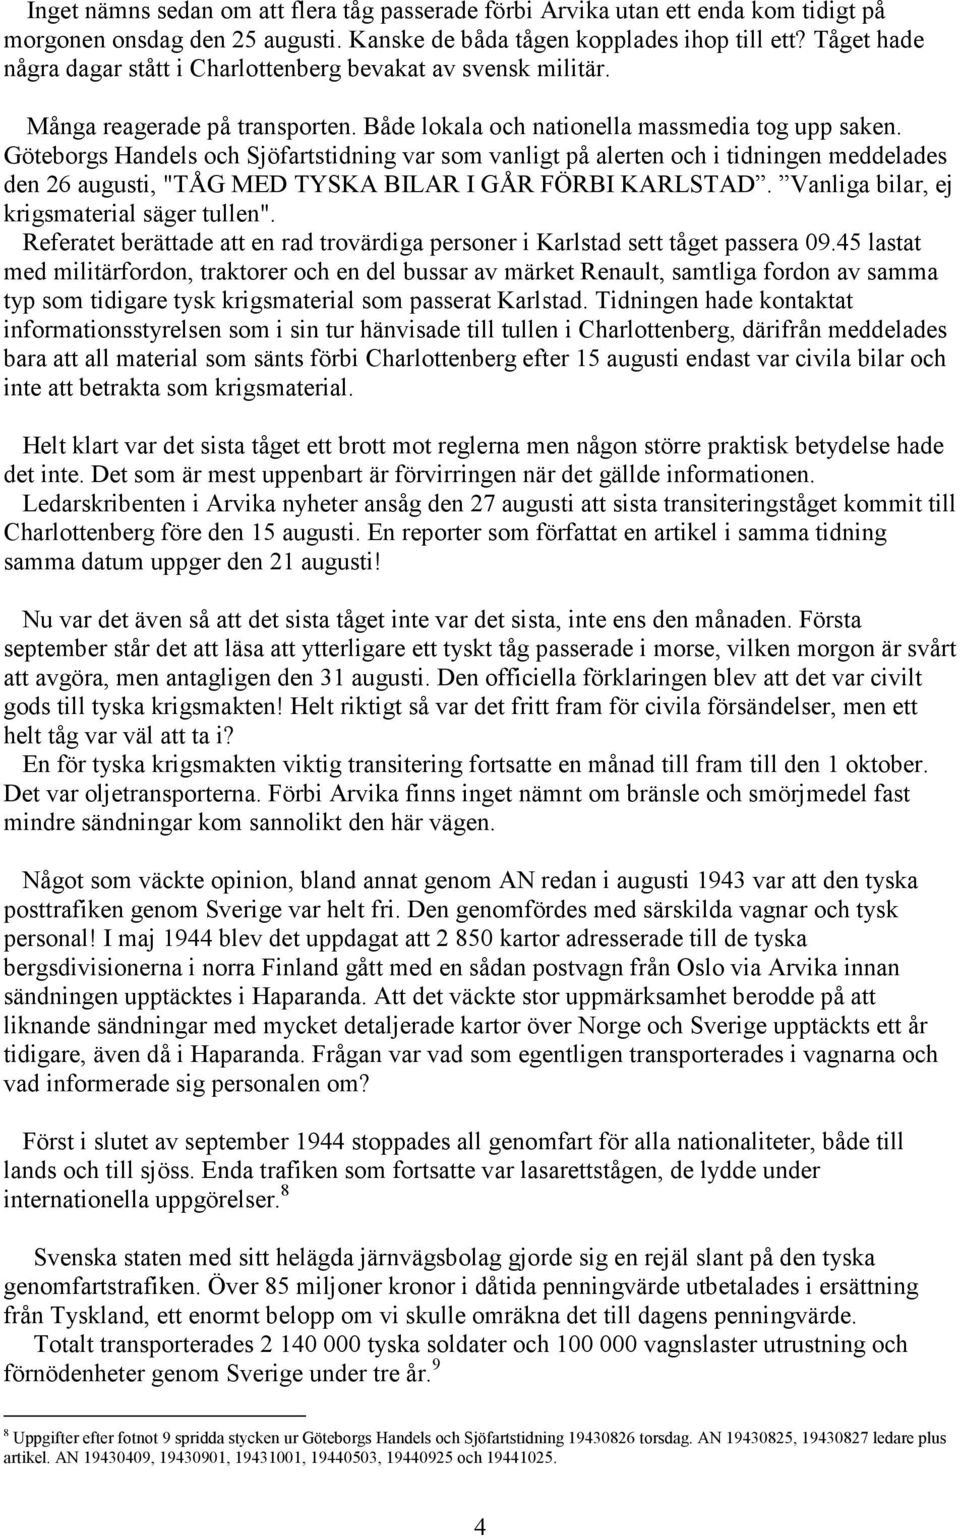 Göteborgs Handels och Sjöfartstidning var som vanligt på alerten och i tidningen meddelades den 26 augusti, "TÅG MED TYSKA BILAR I GÅR FÖRBI KARLSTAD. Vanliga bilar, ej krigsmaterial säger tullen".